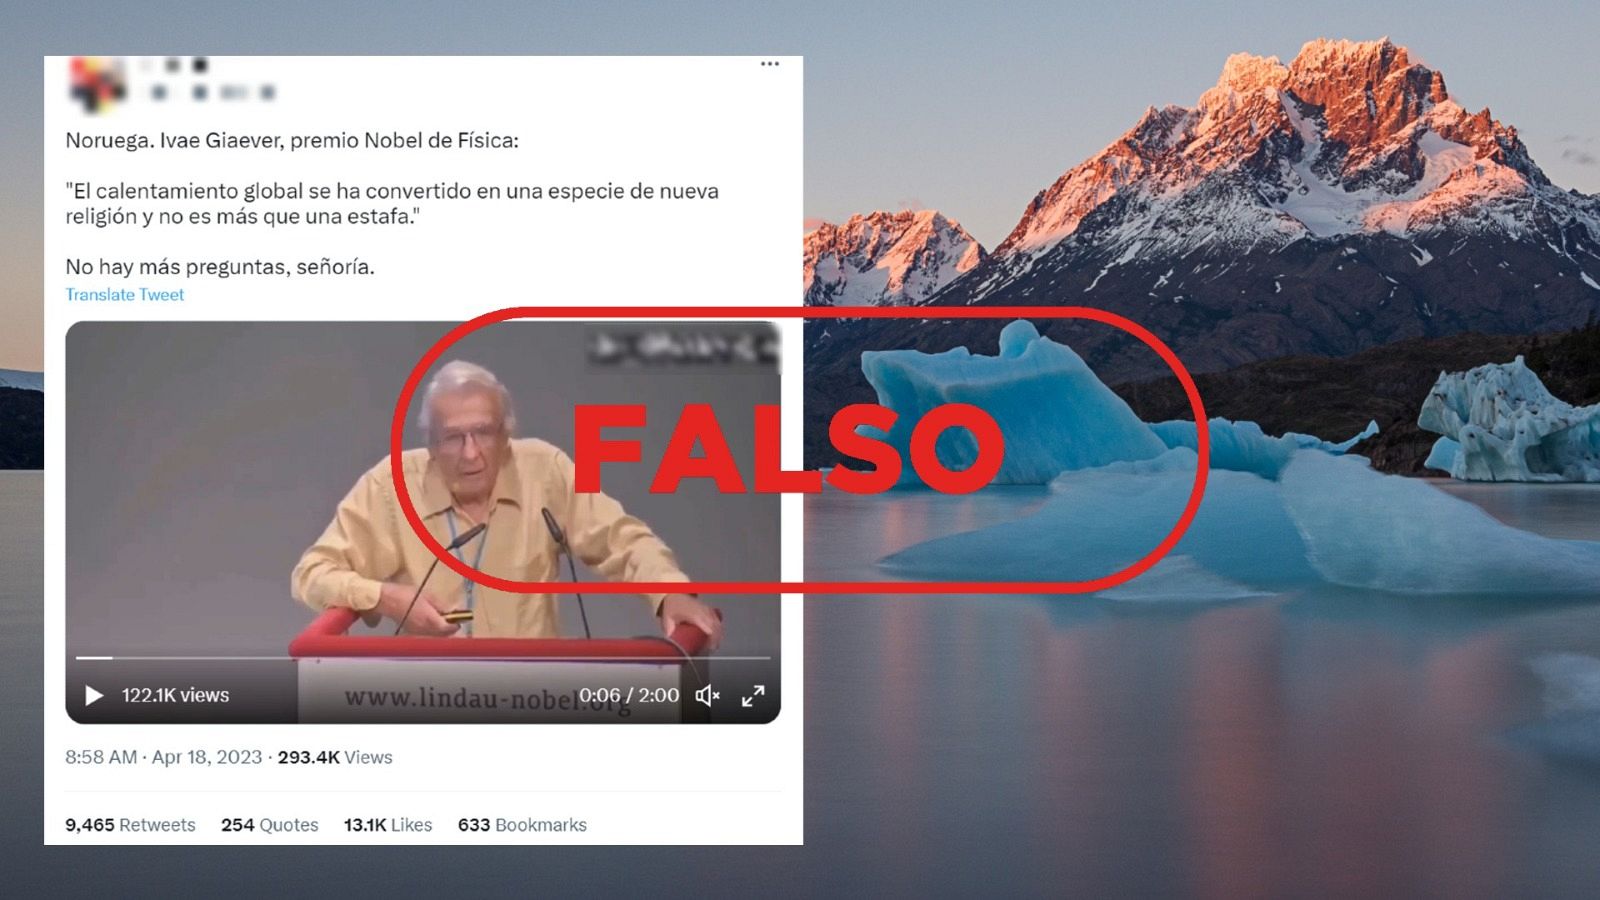 Tuit que adjunta el vídeo que usa afirmaciones falsas para negar el calentamiento global. Con el sello falso en rojo.